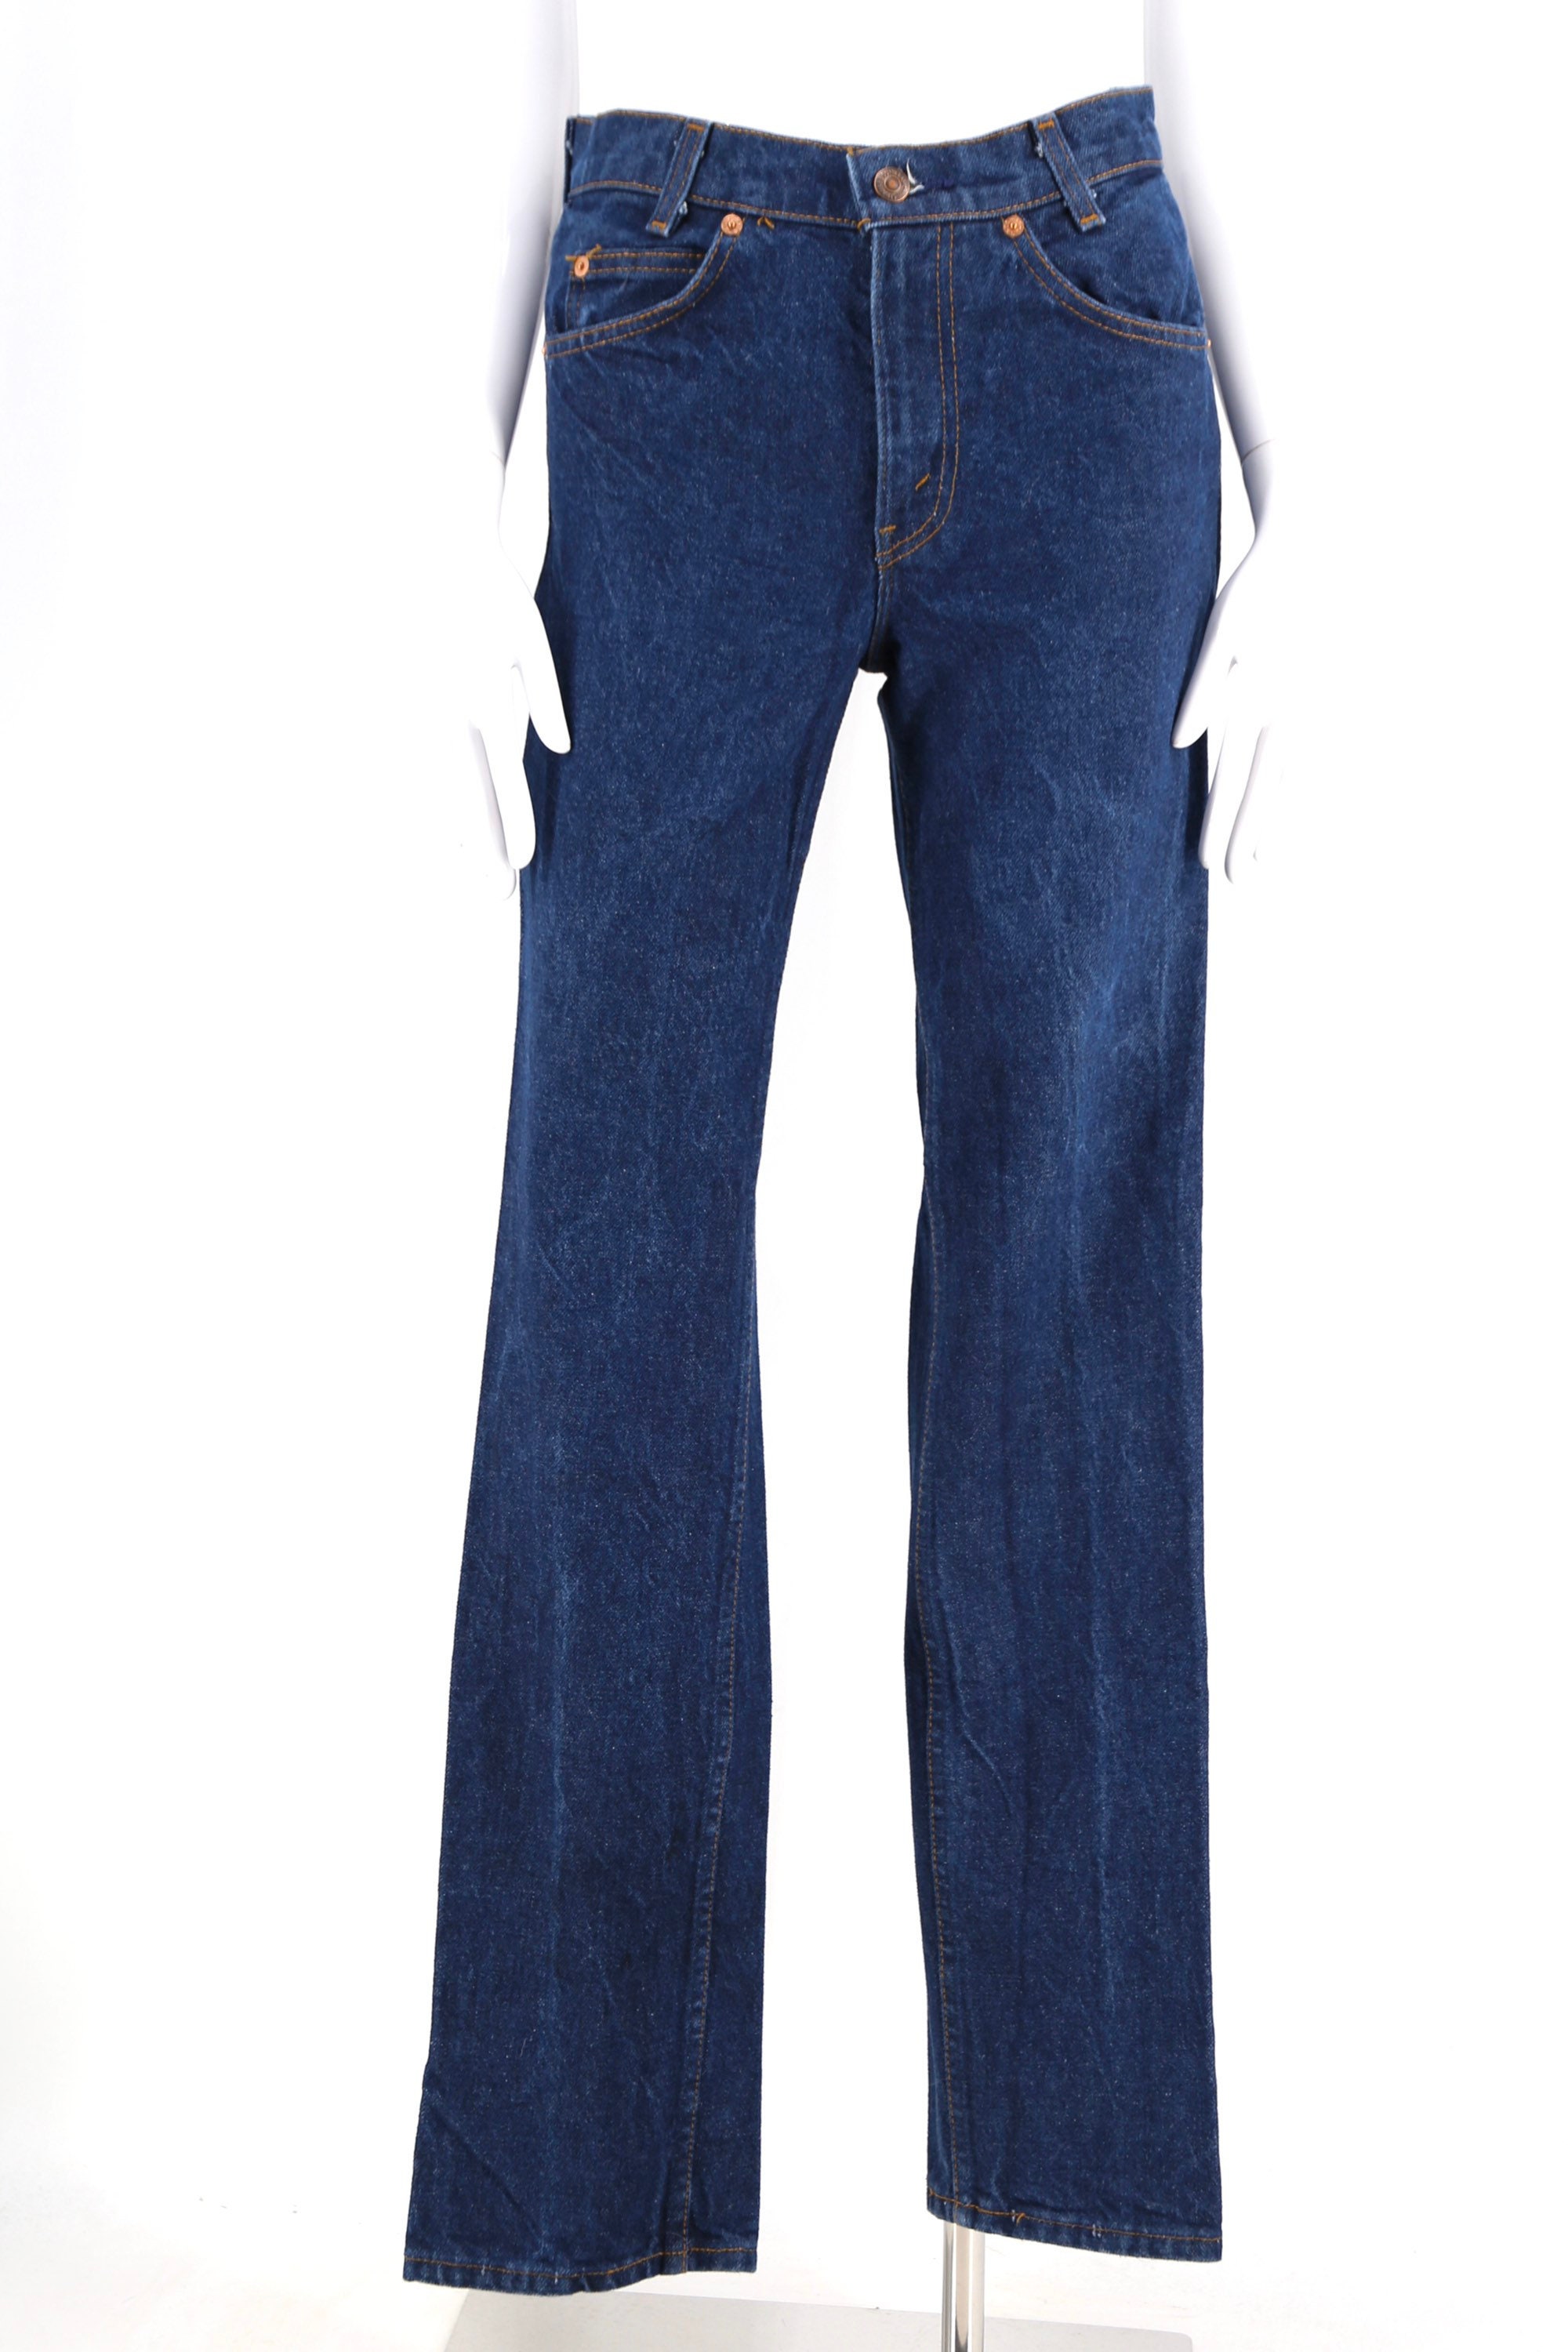 70s LEVIS 718 Orange Tab Student fit jeans 27 / vintage 1970s medium ...